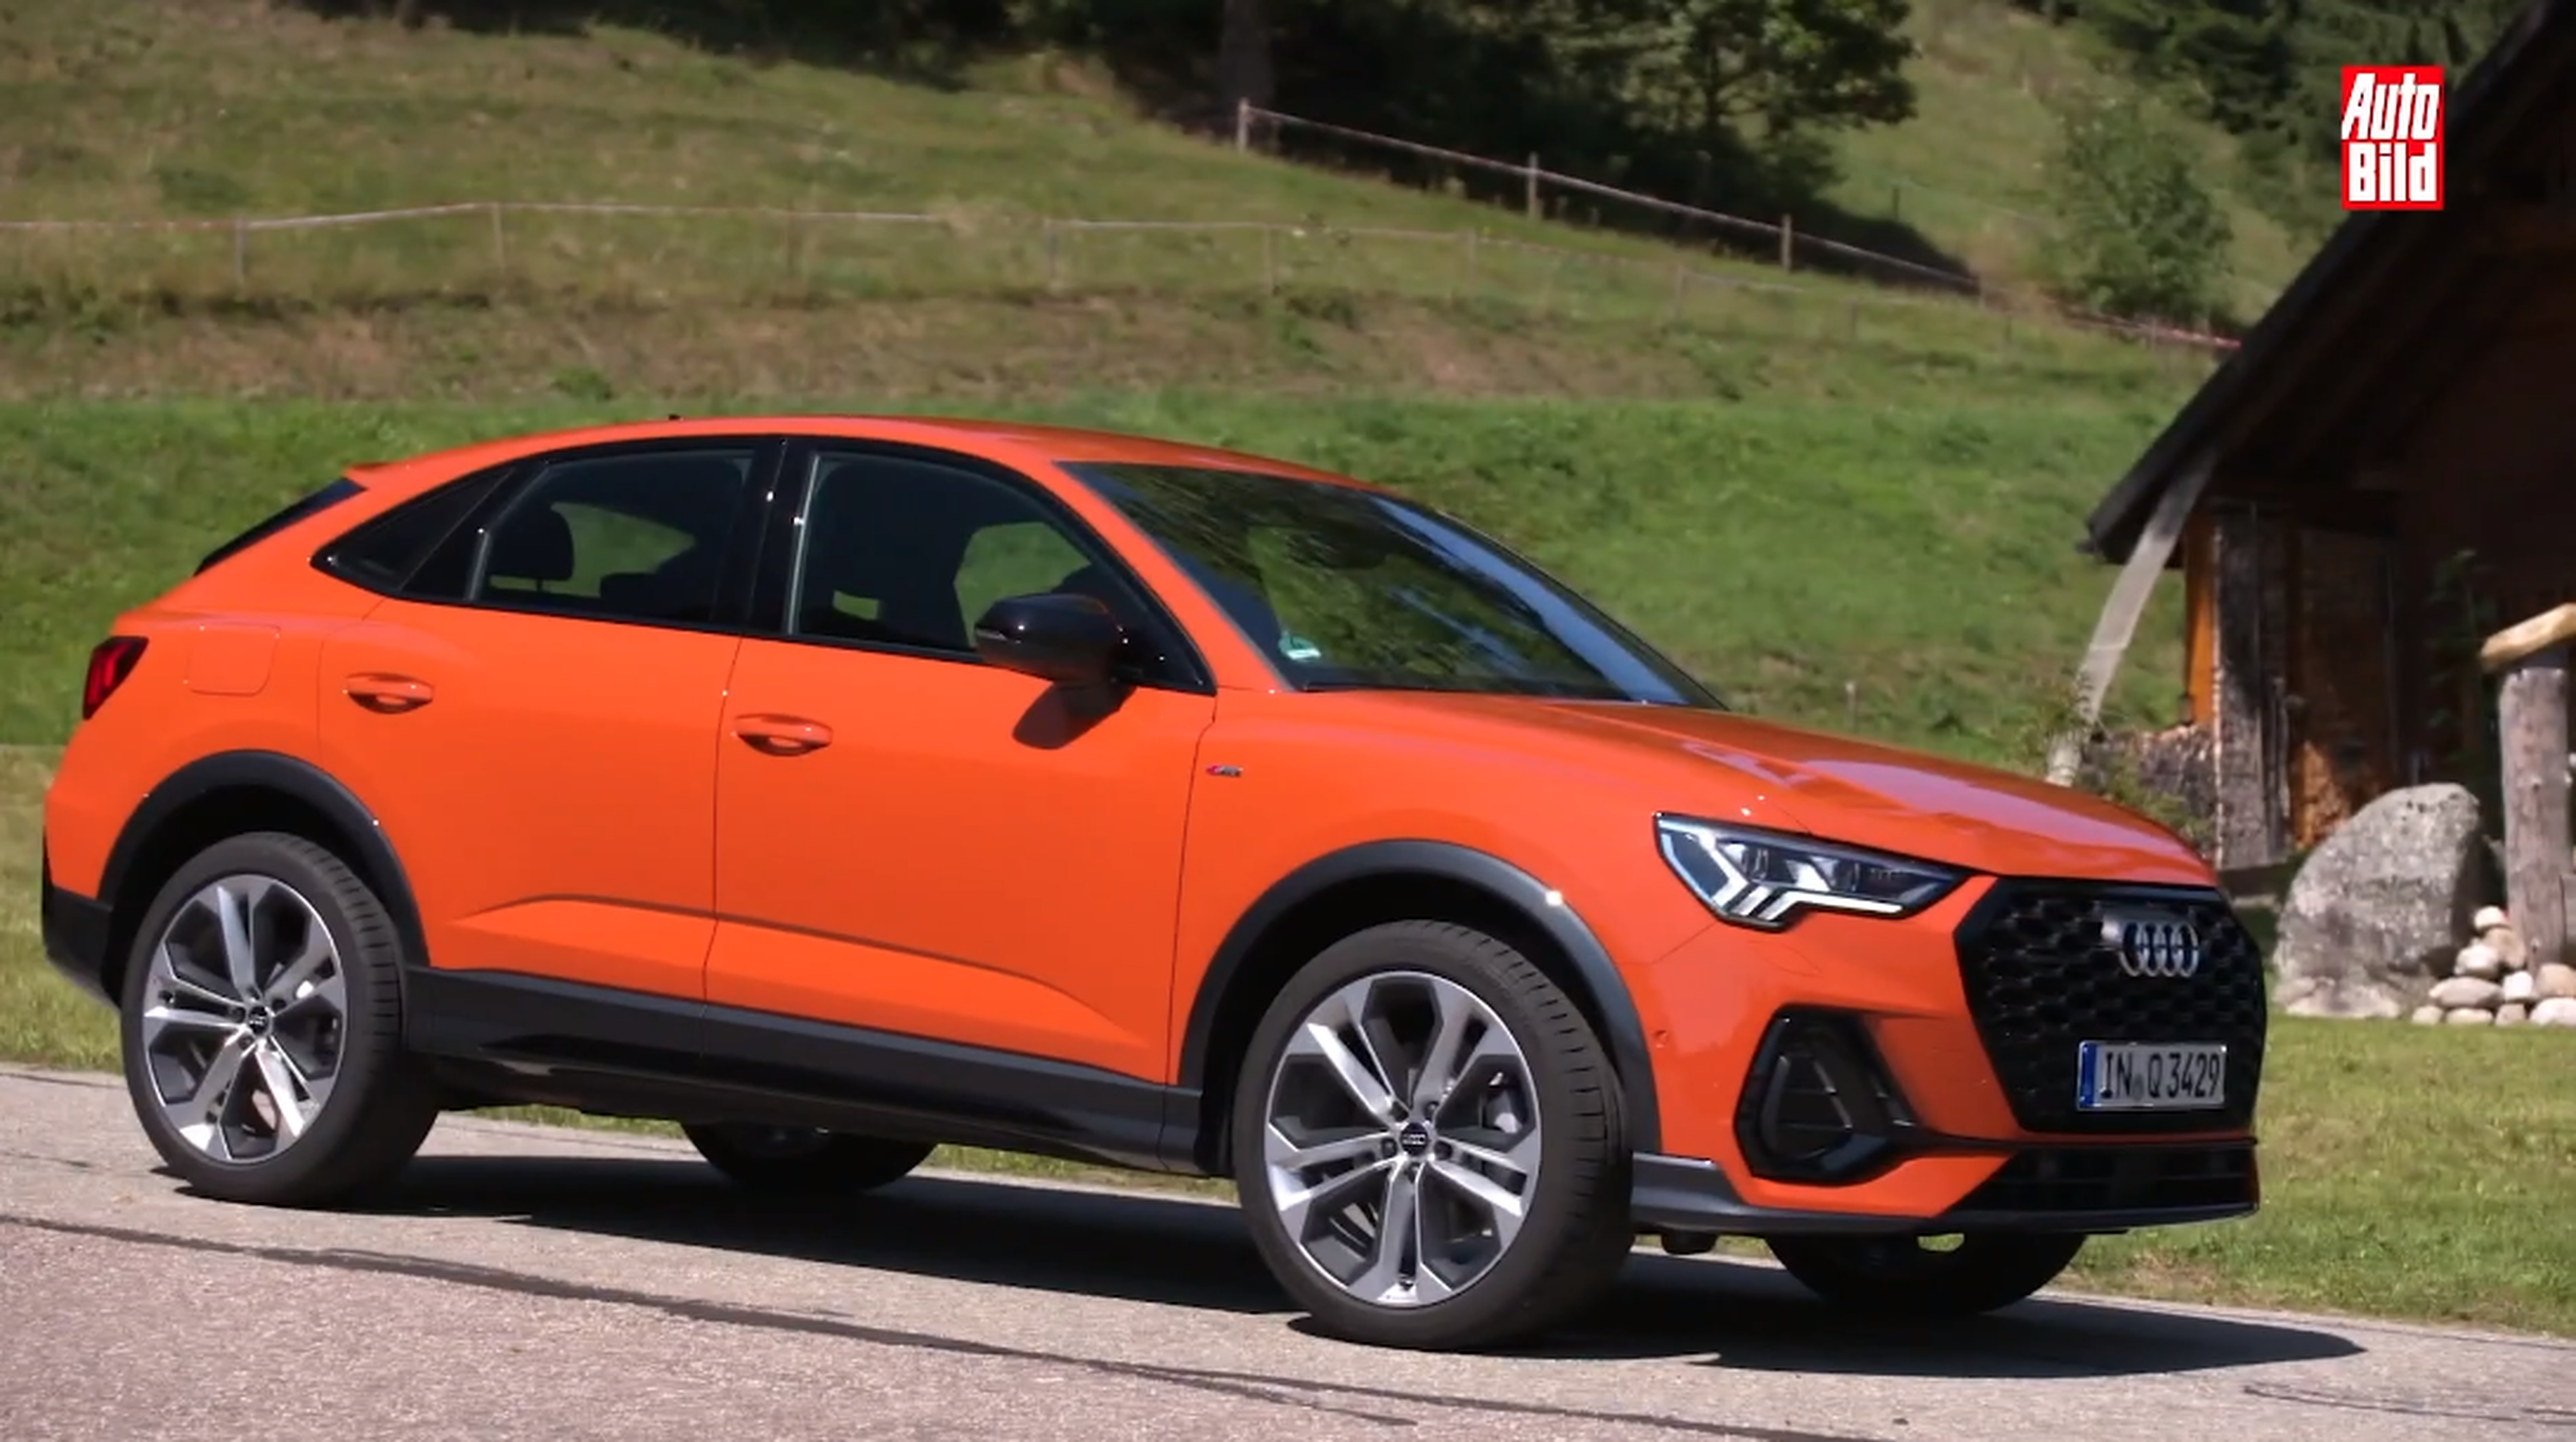 VÍDEO: Probamos el Audi Q3 Sportback, todos los detalles